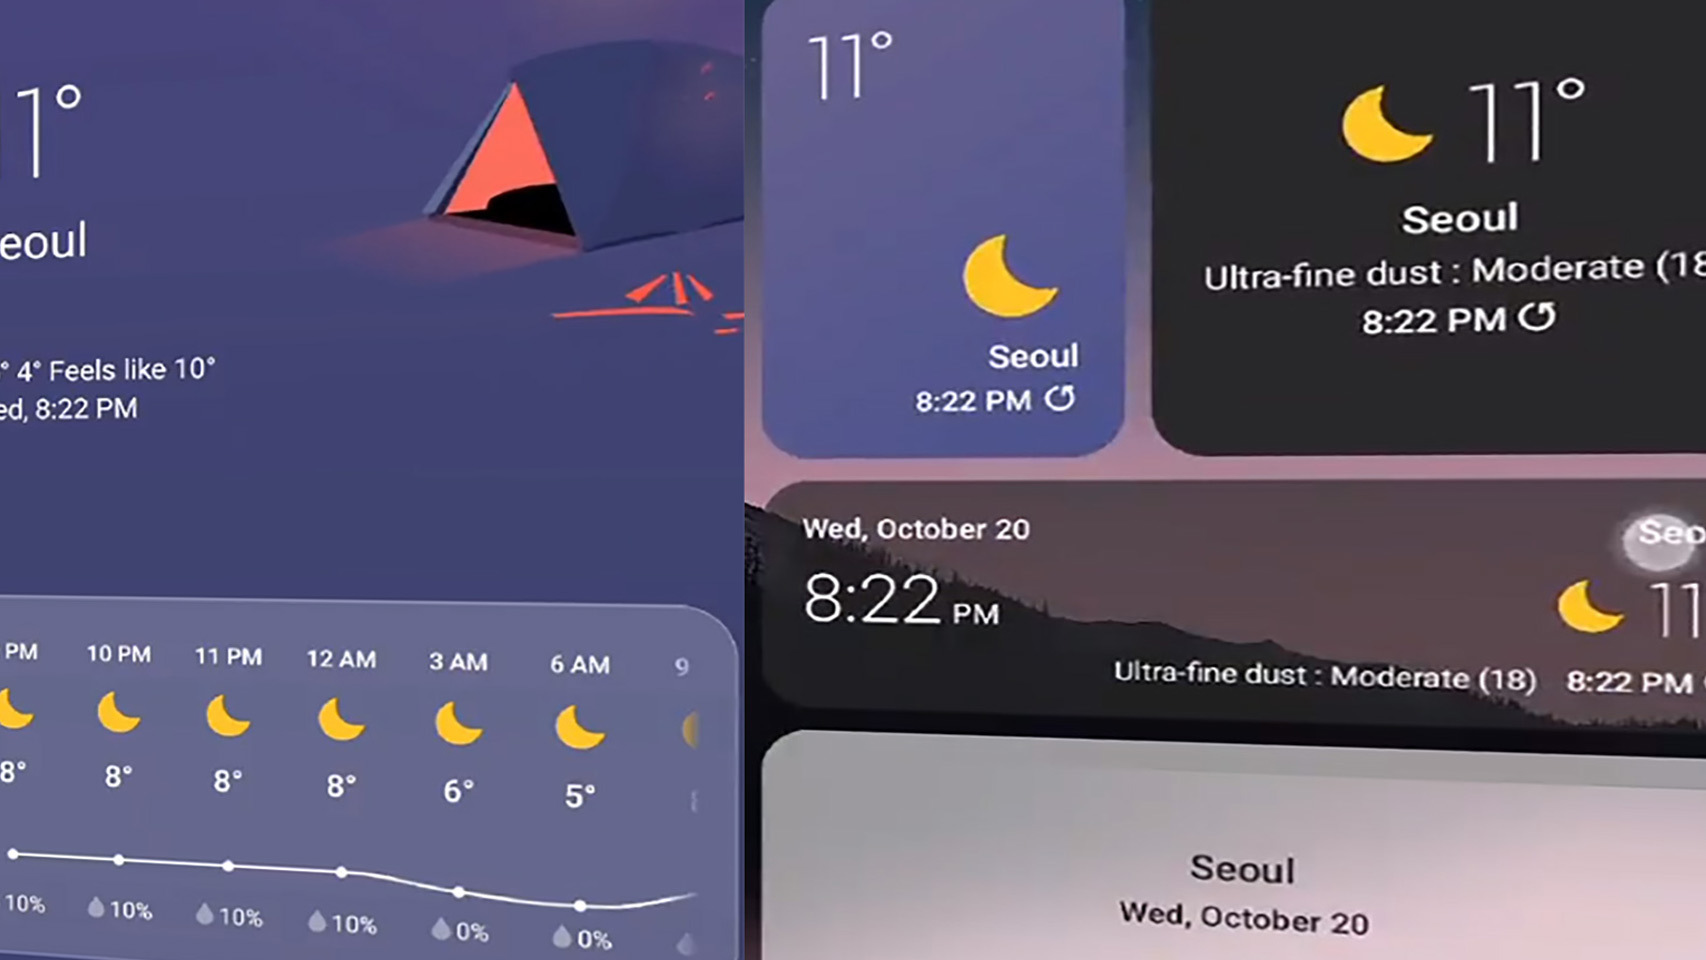 Nueva beta para One UI 4 lanzada en Corea del Sur